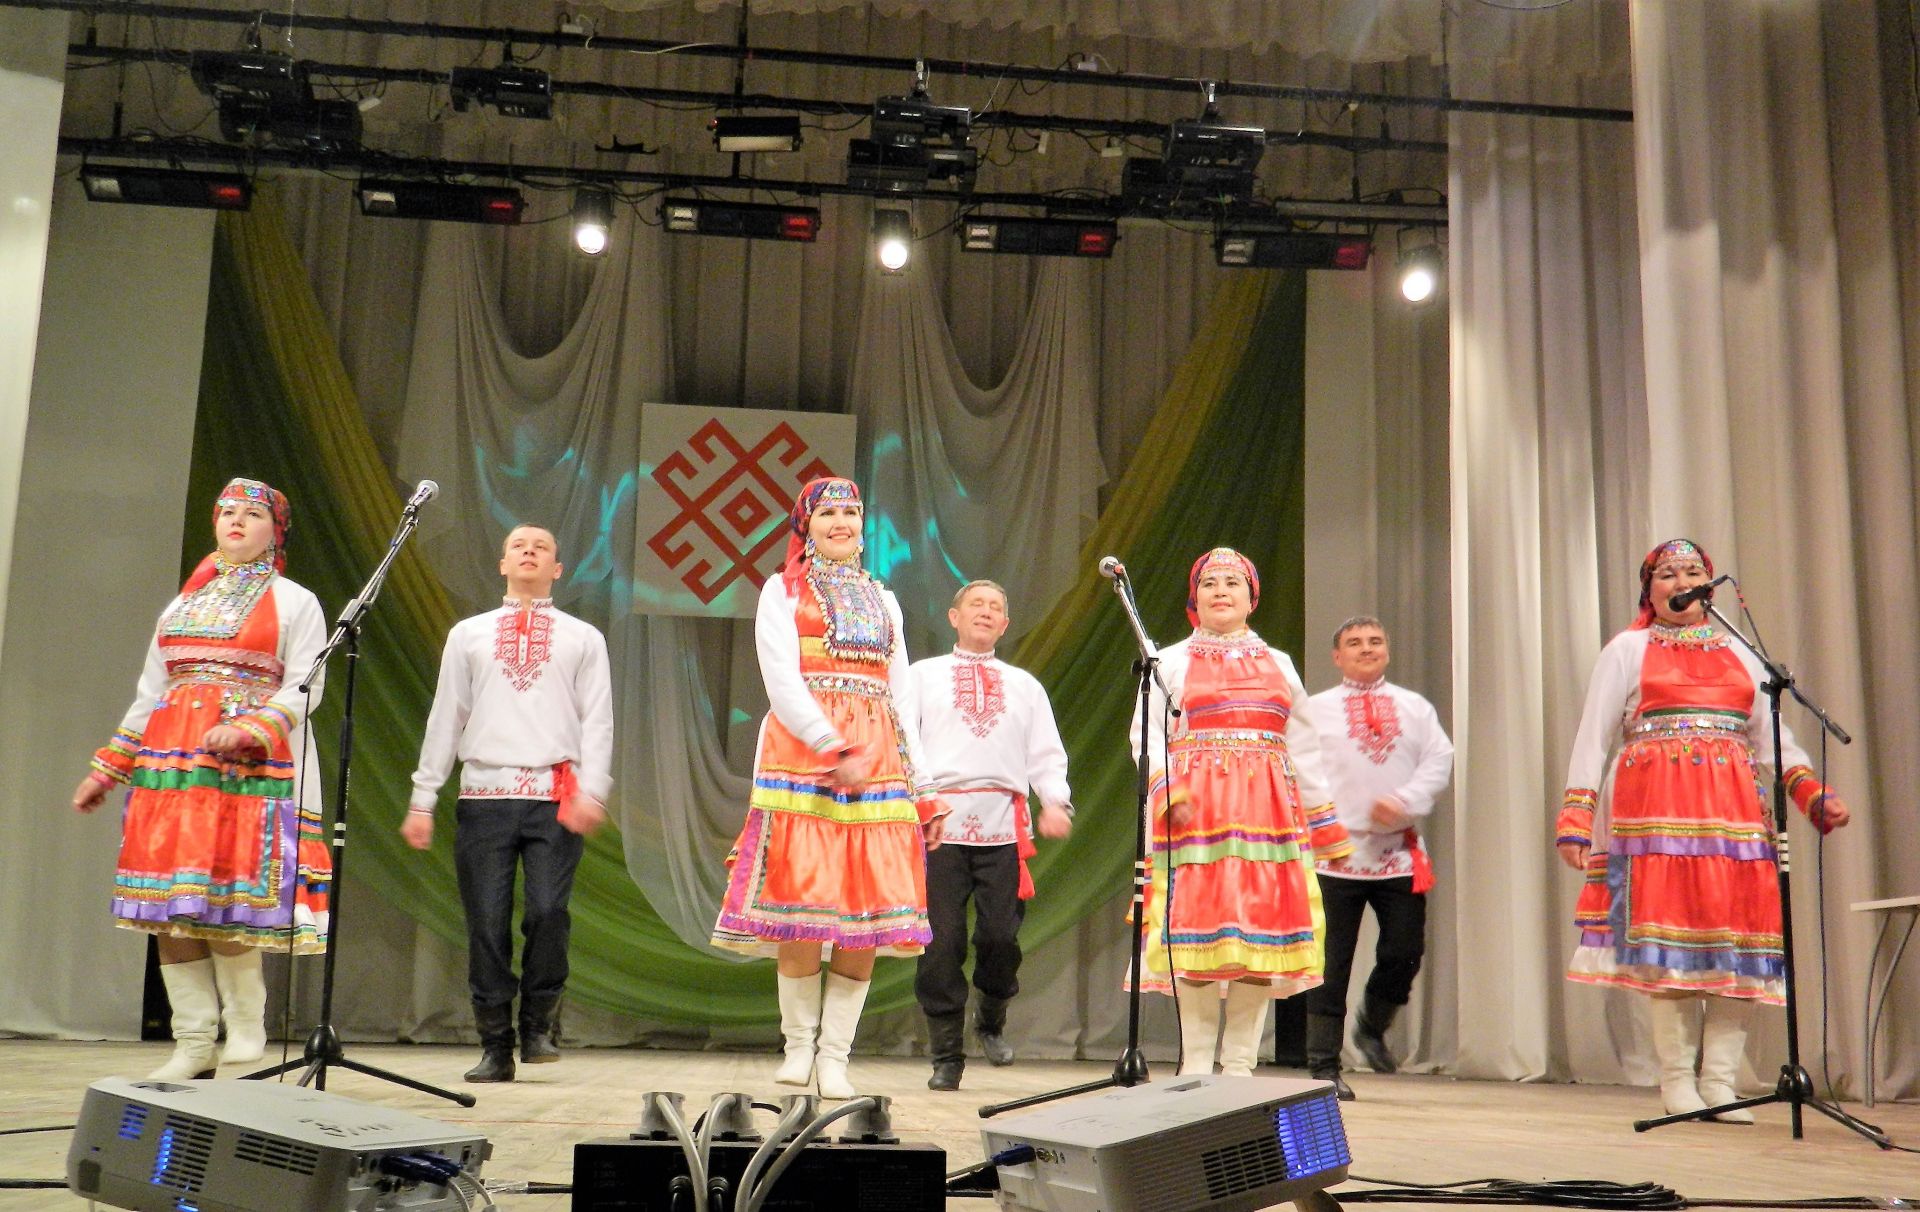 Народный марийский ансамбль "Элнет" принял участие в мероприятии Удмуртской Республики